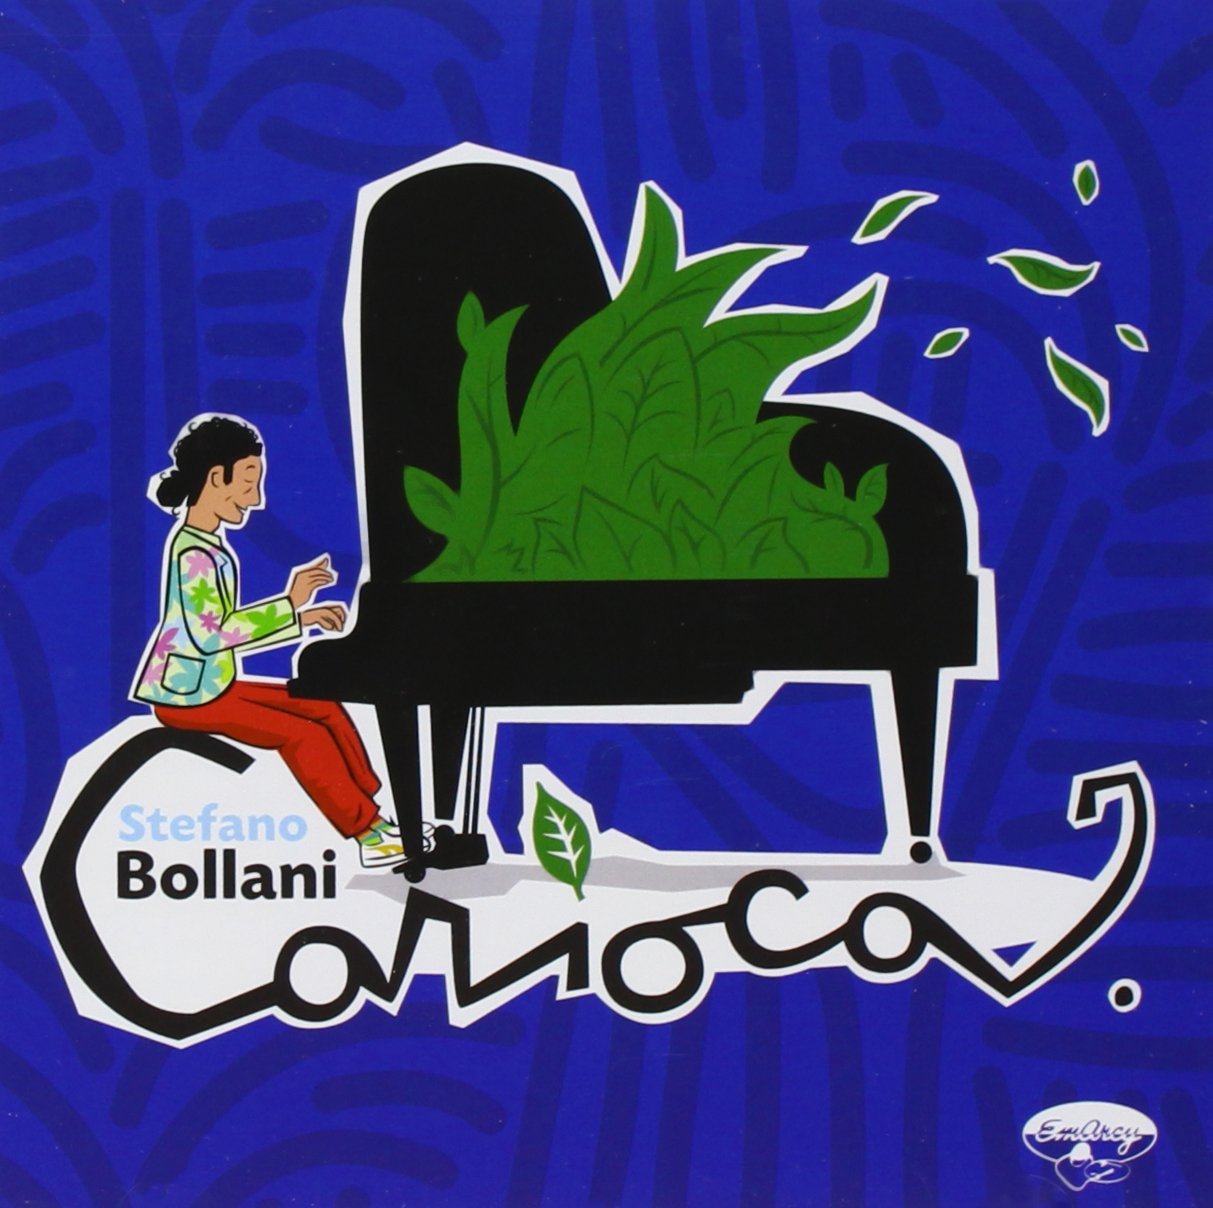 Audio Cd Stefano Bollani - Carioca NUOVO SIGILLATO, EDIZIONE DEL 06/06/2008 SUBITO DISPONIBILE